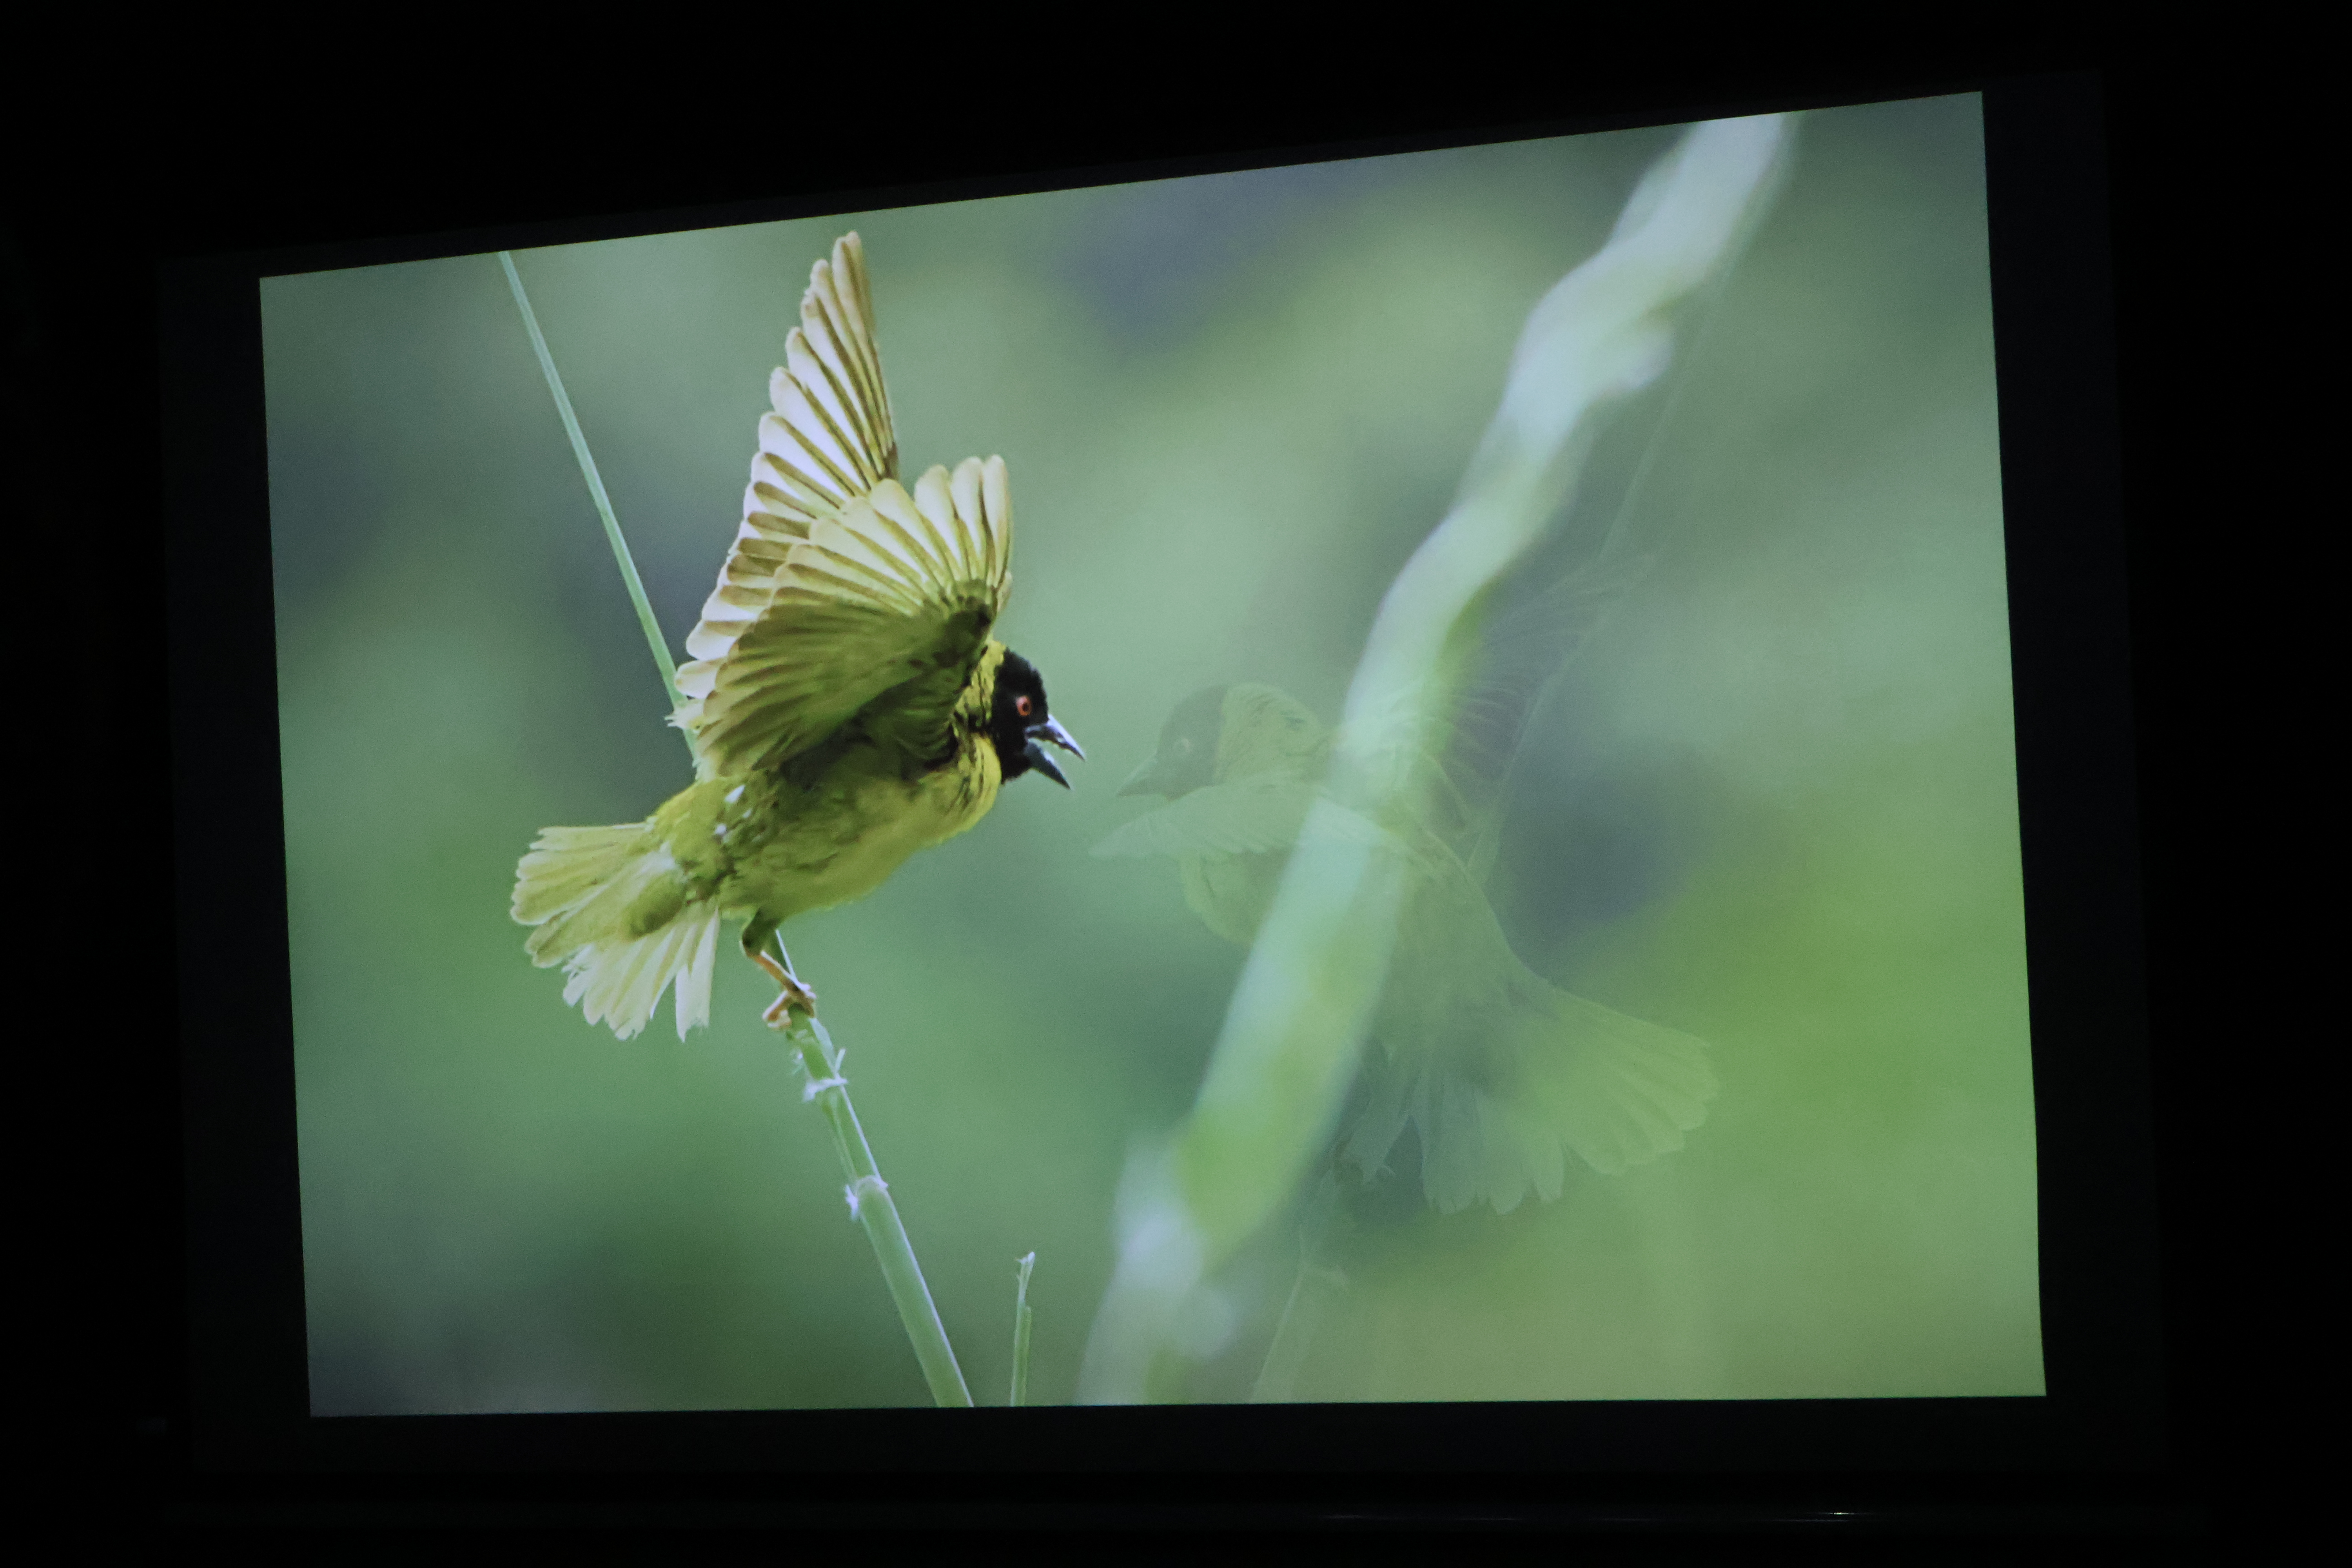 Zdjęcie ukazuje żółtego ptaka prezentowanego na pokazie multimedialnym 